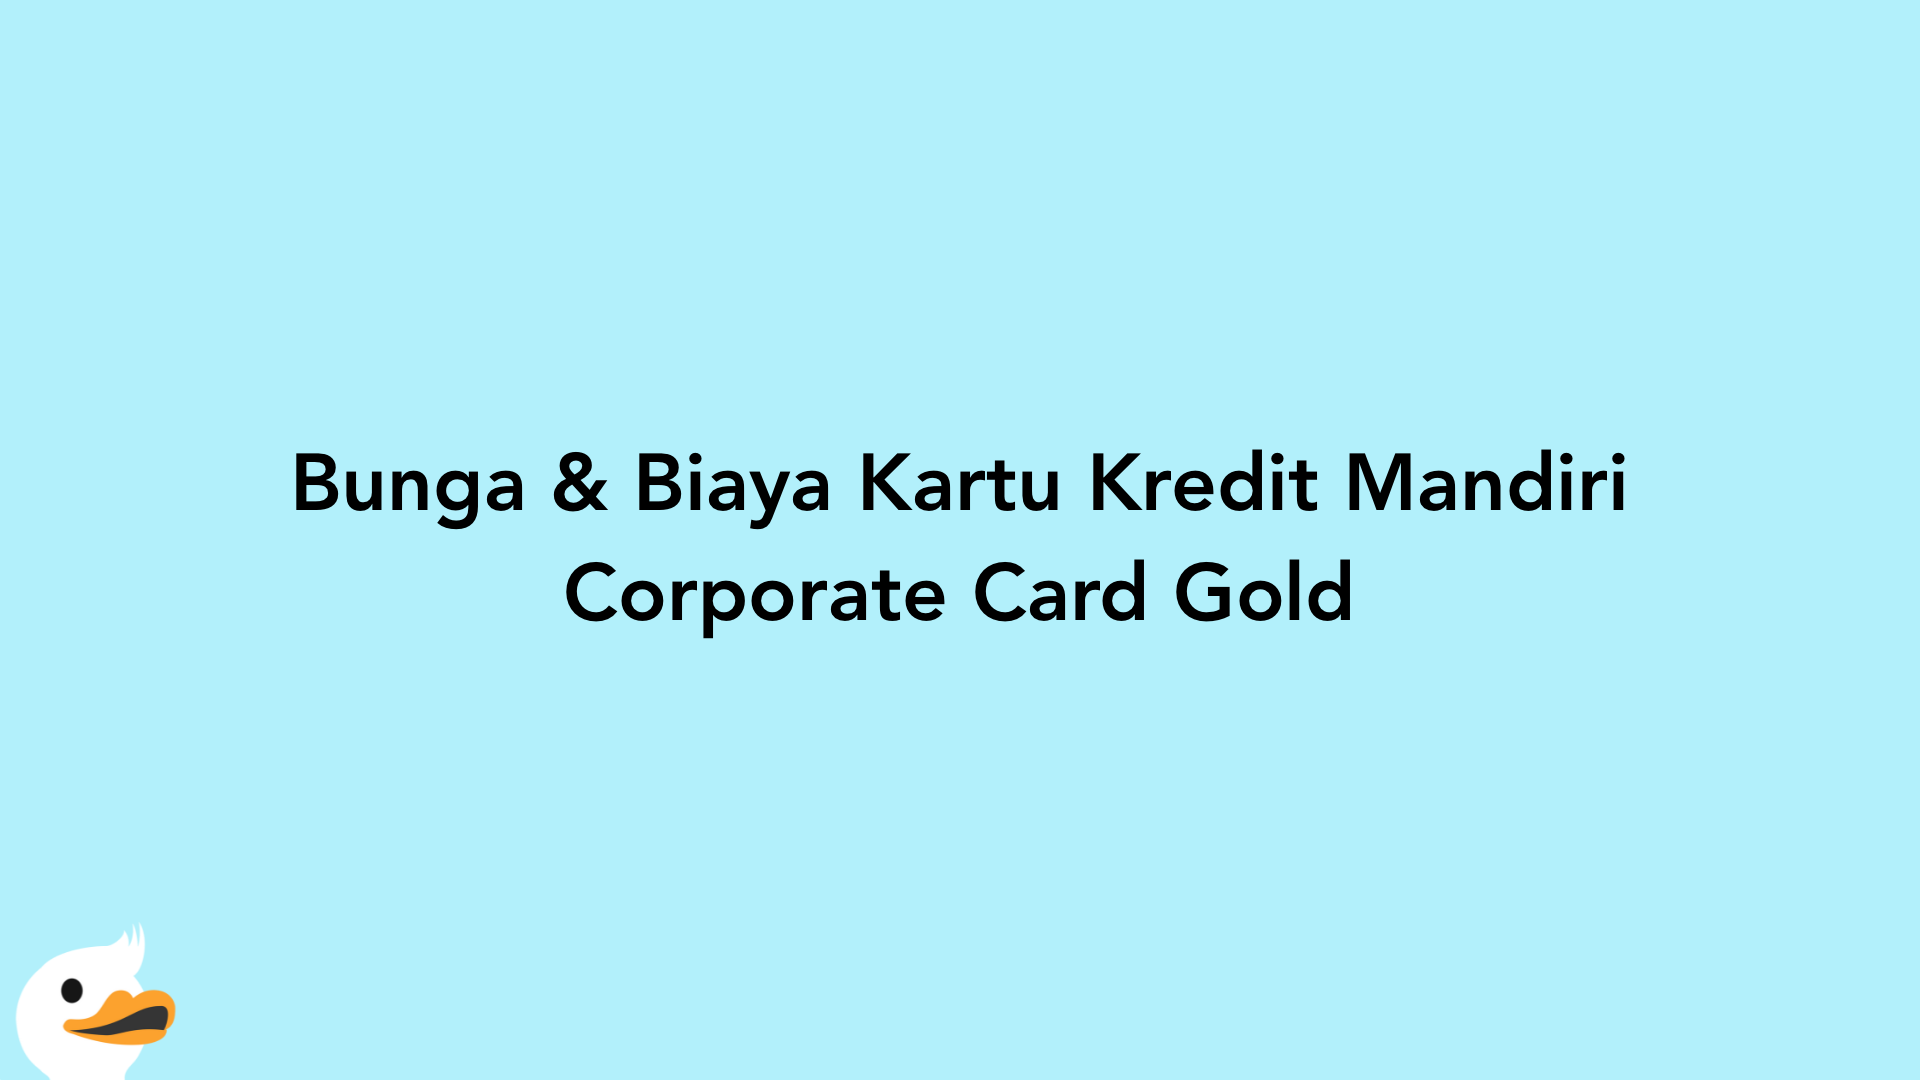 Bunga & Biaya Kartu Kredit Mandiri Corporate Card Gold